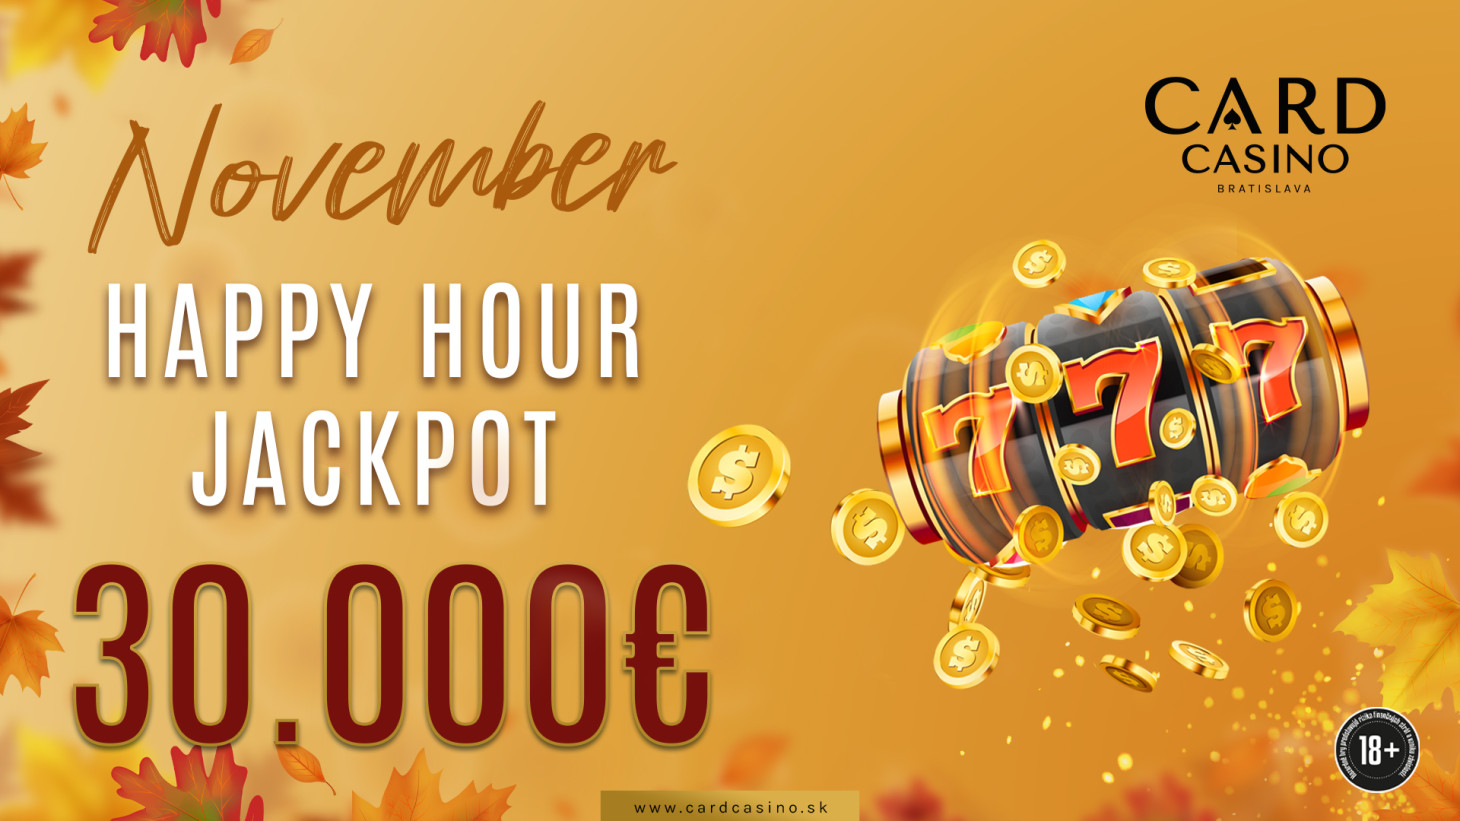 Der November ist voll von Gewinnen mit einem Happy Hour Jackpot von 30.000€!